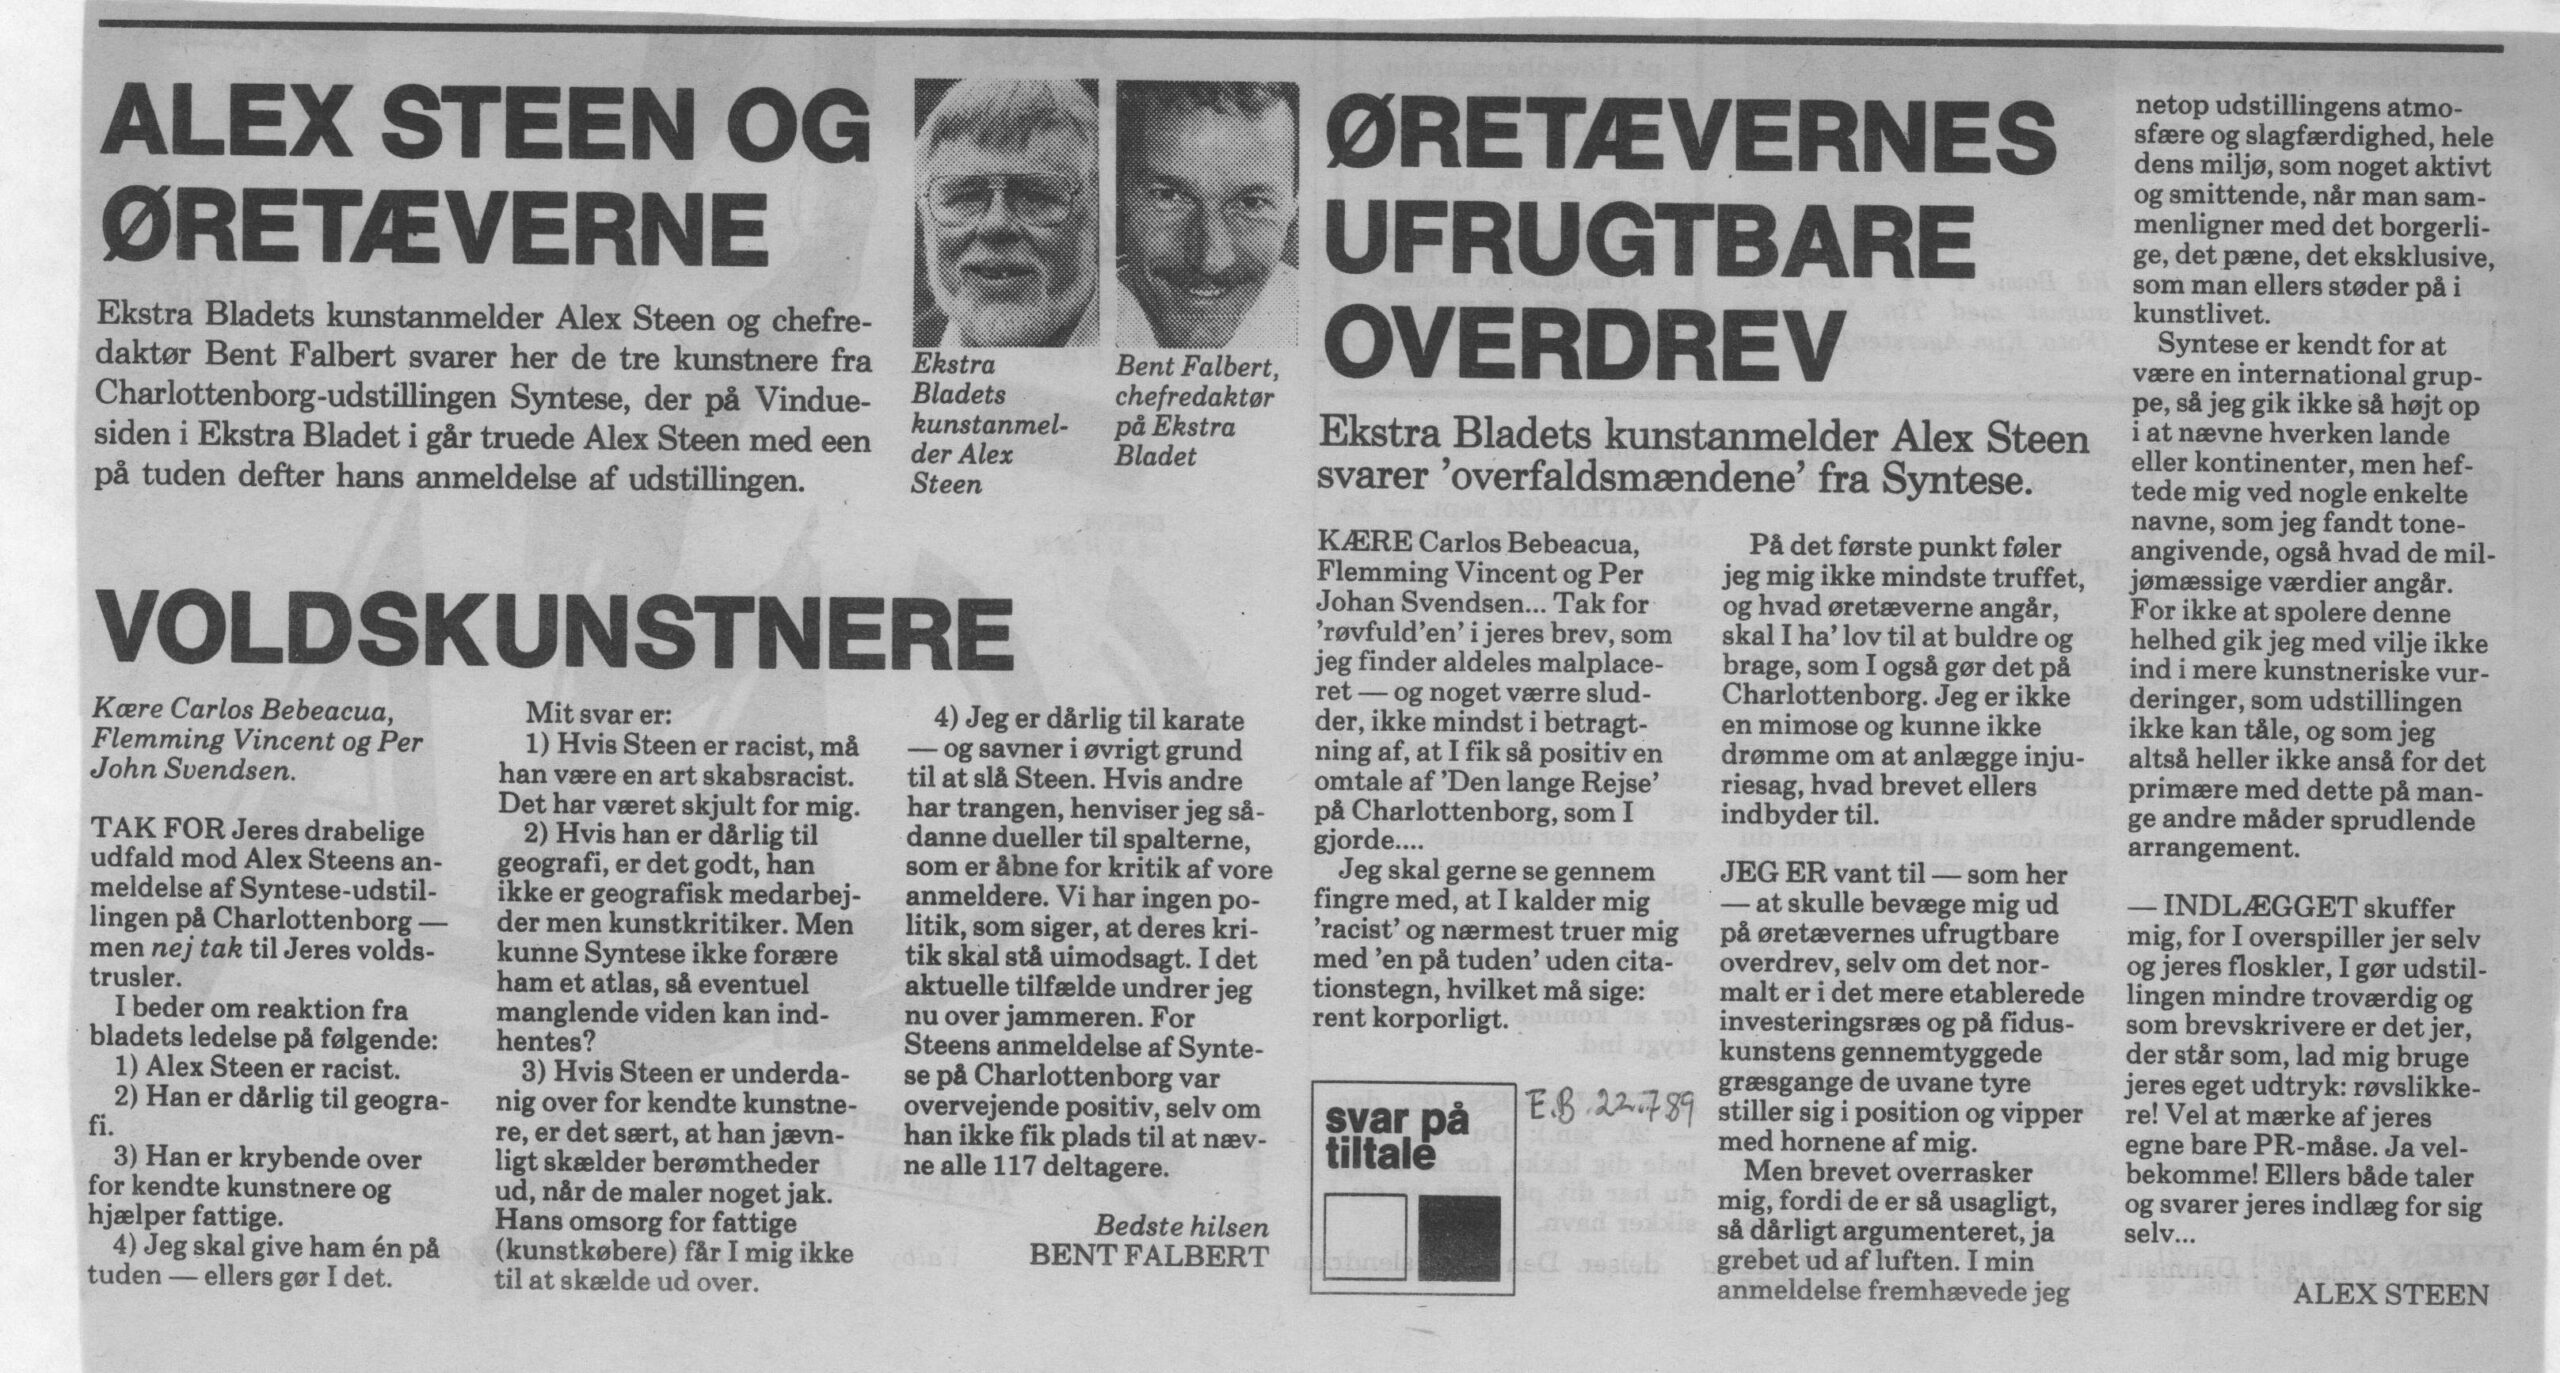 Alex Steen og øretæverne. Debatindlæg (Den lange rejse. Charlottenborg 1989, københavn) Alex Steen, Bent Falbert. Ekstra Bladet.